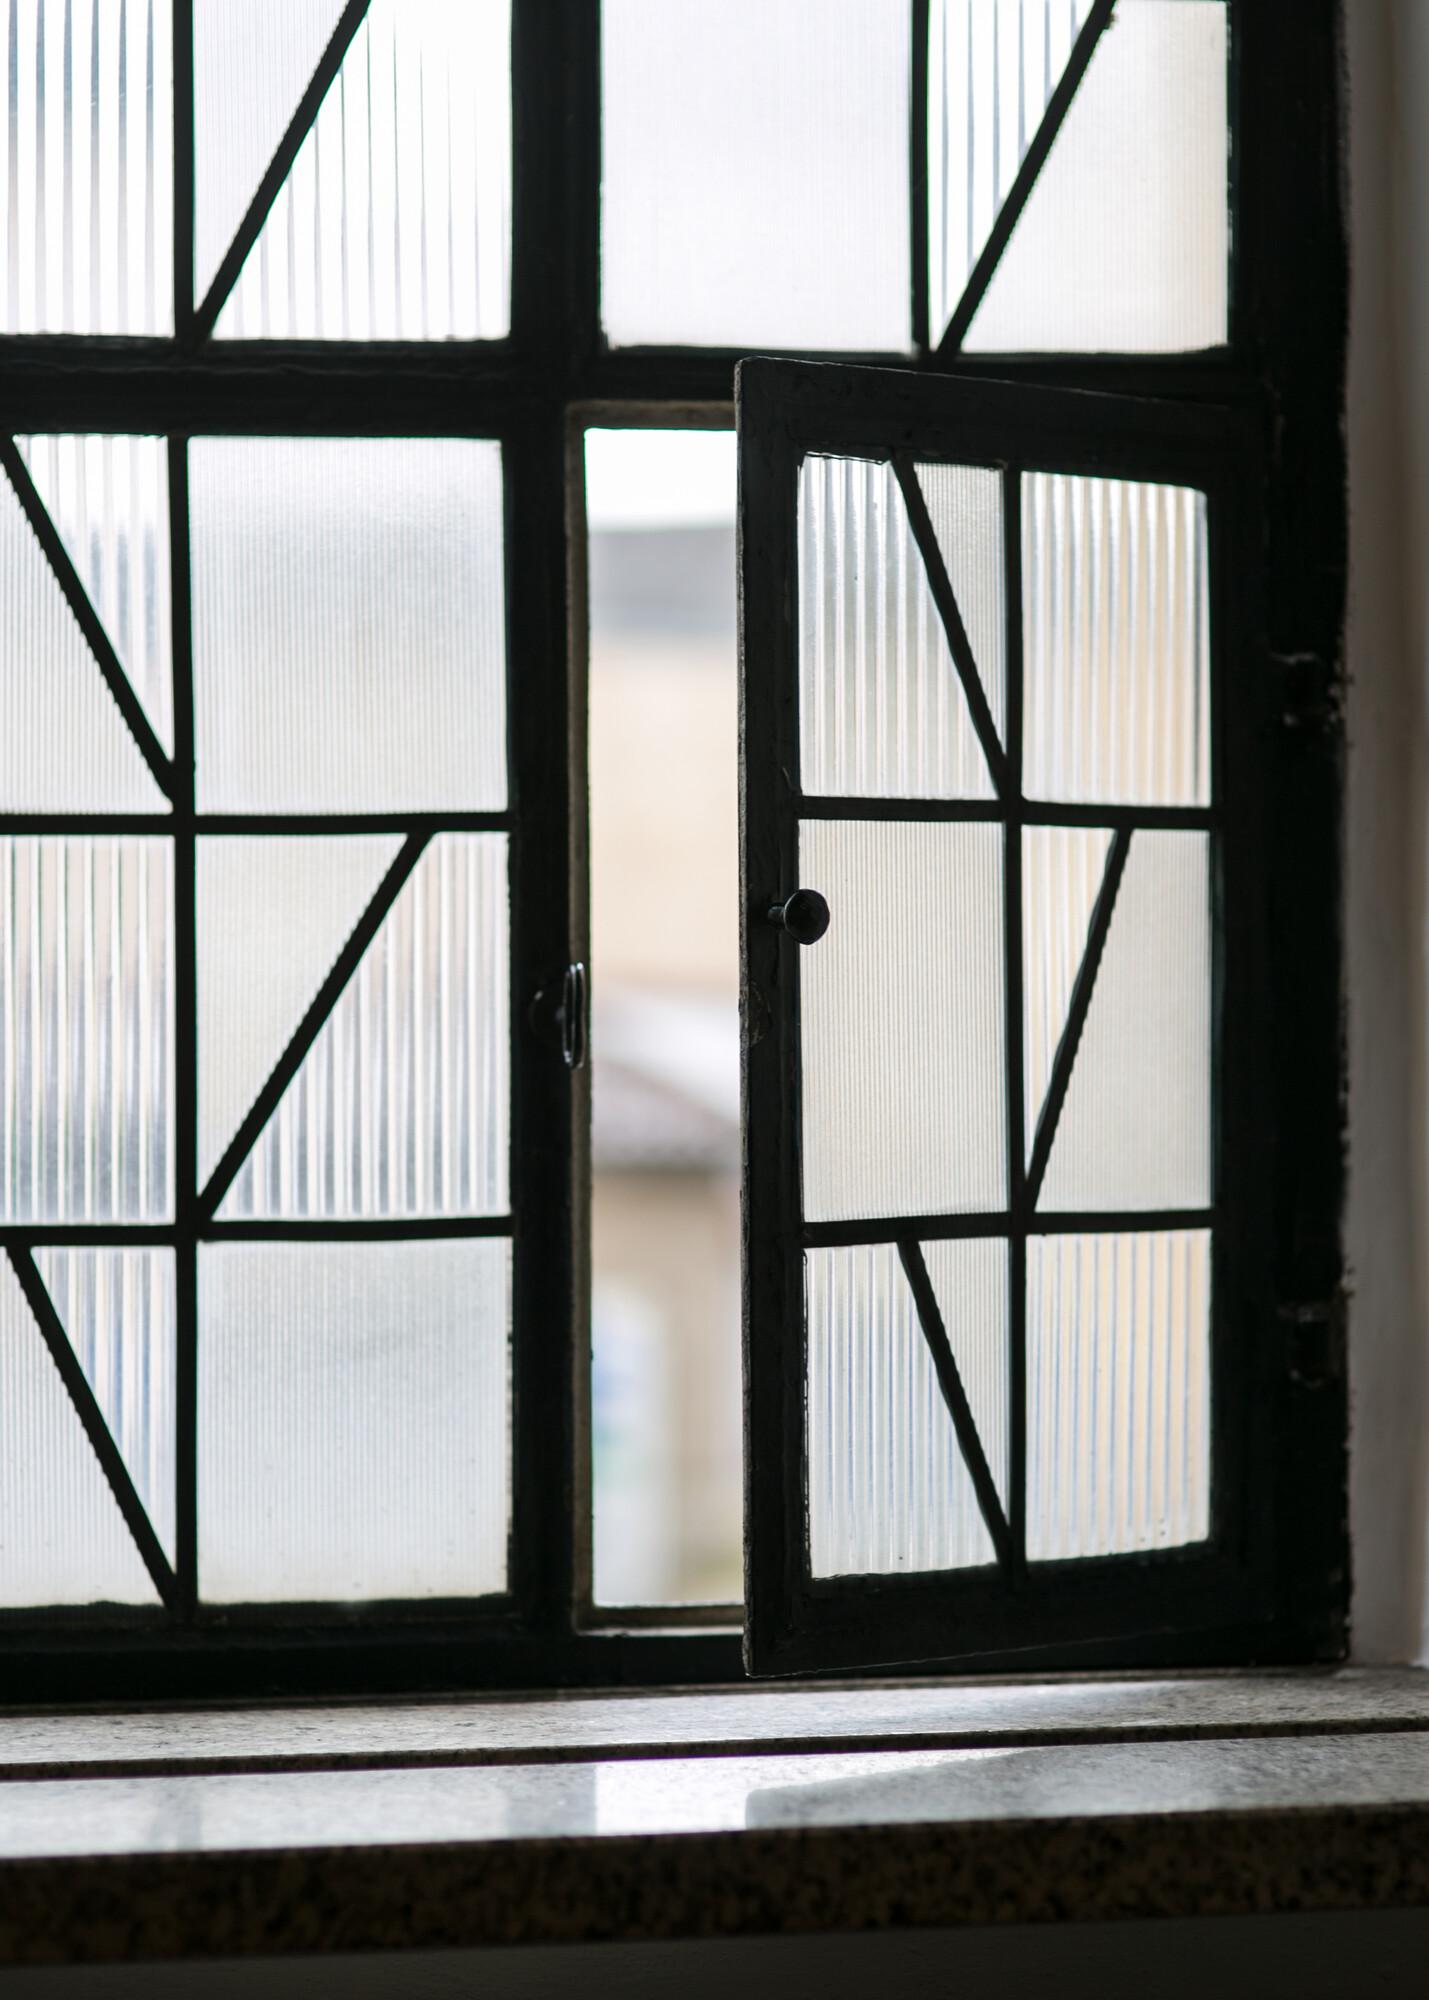 Fenserfront aus Reliefglas. Ein Teilfenster davon ist geöffnet